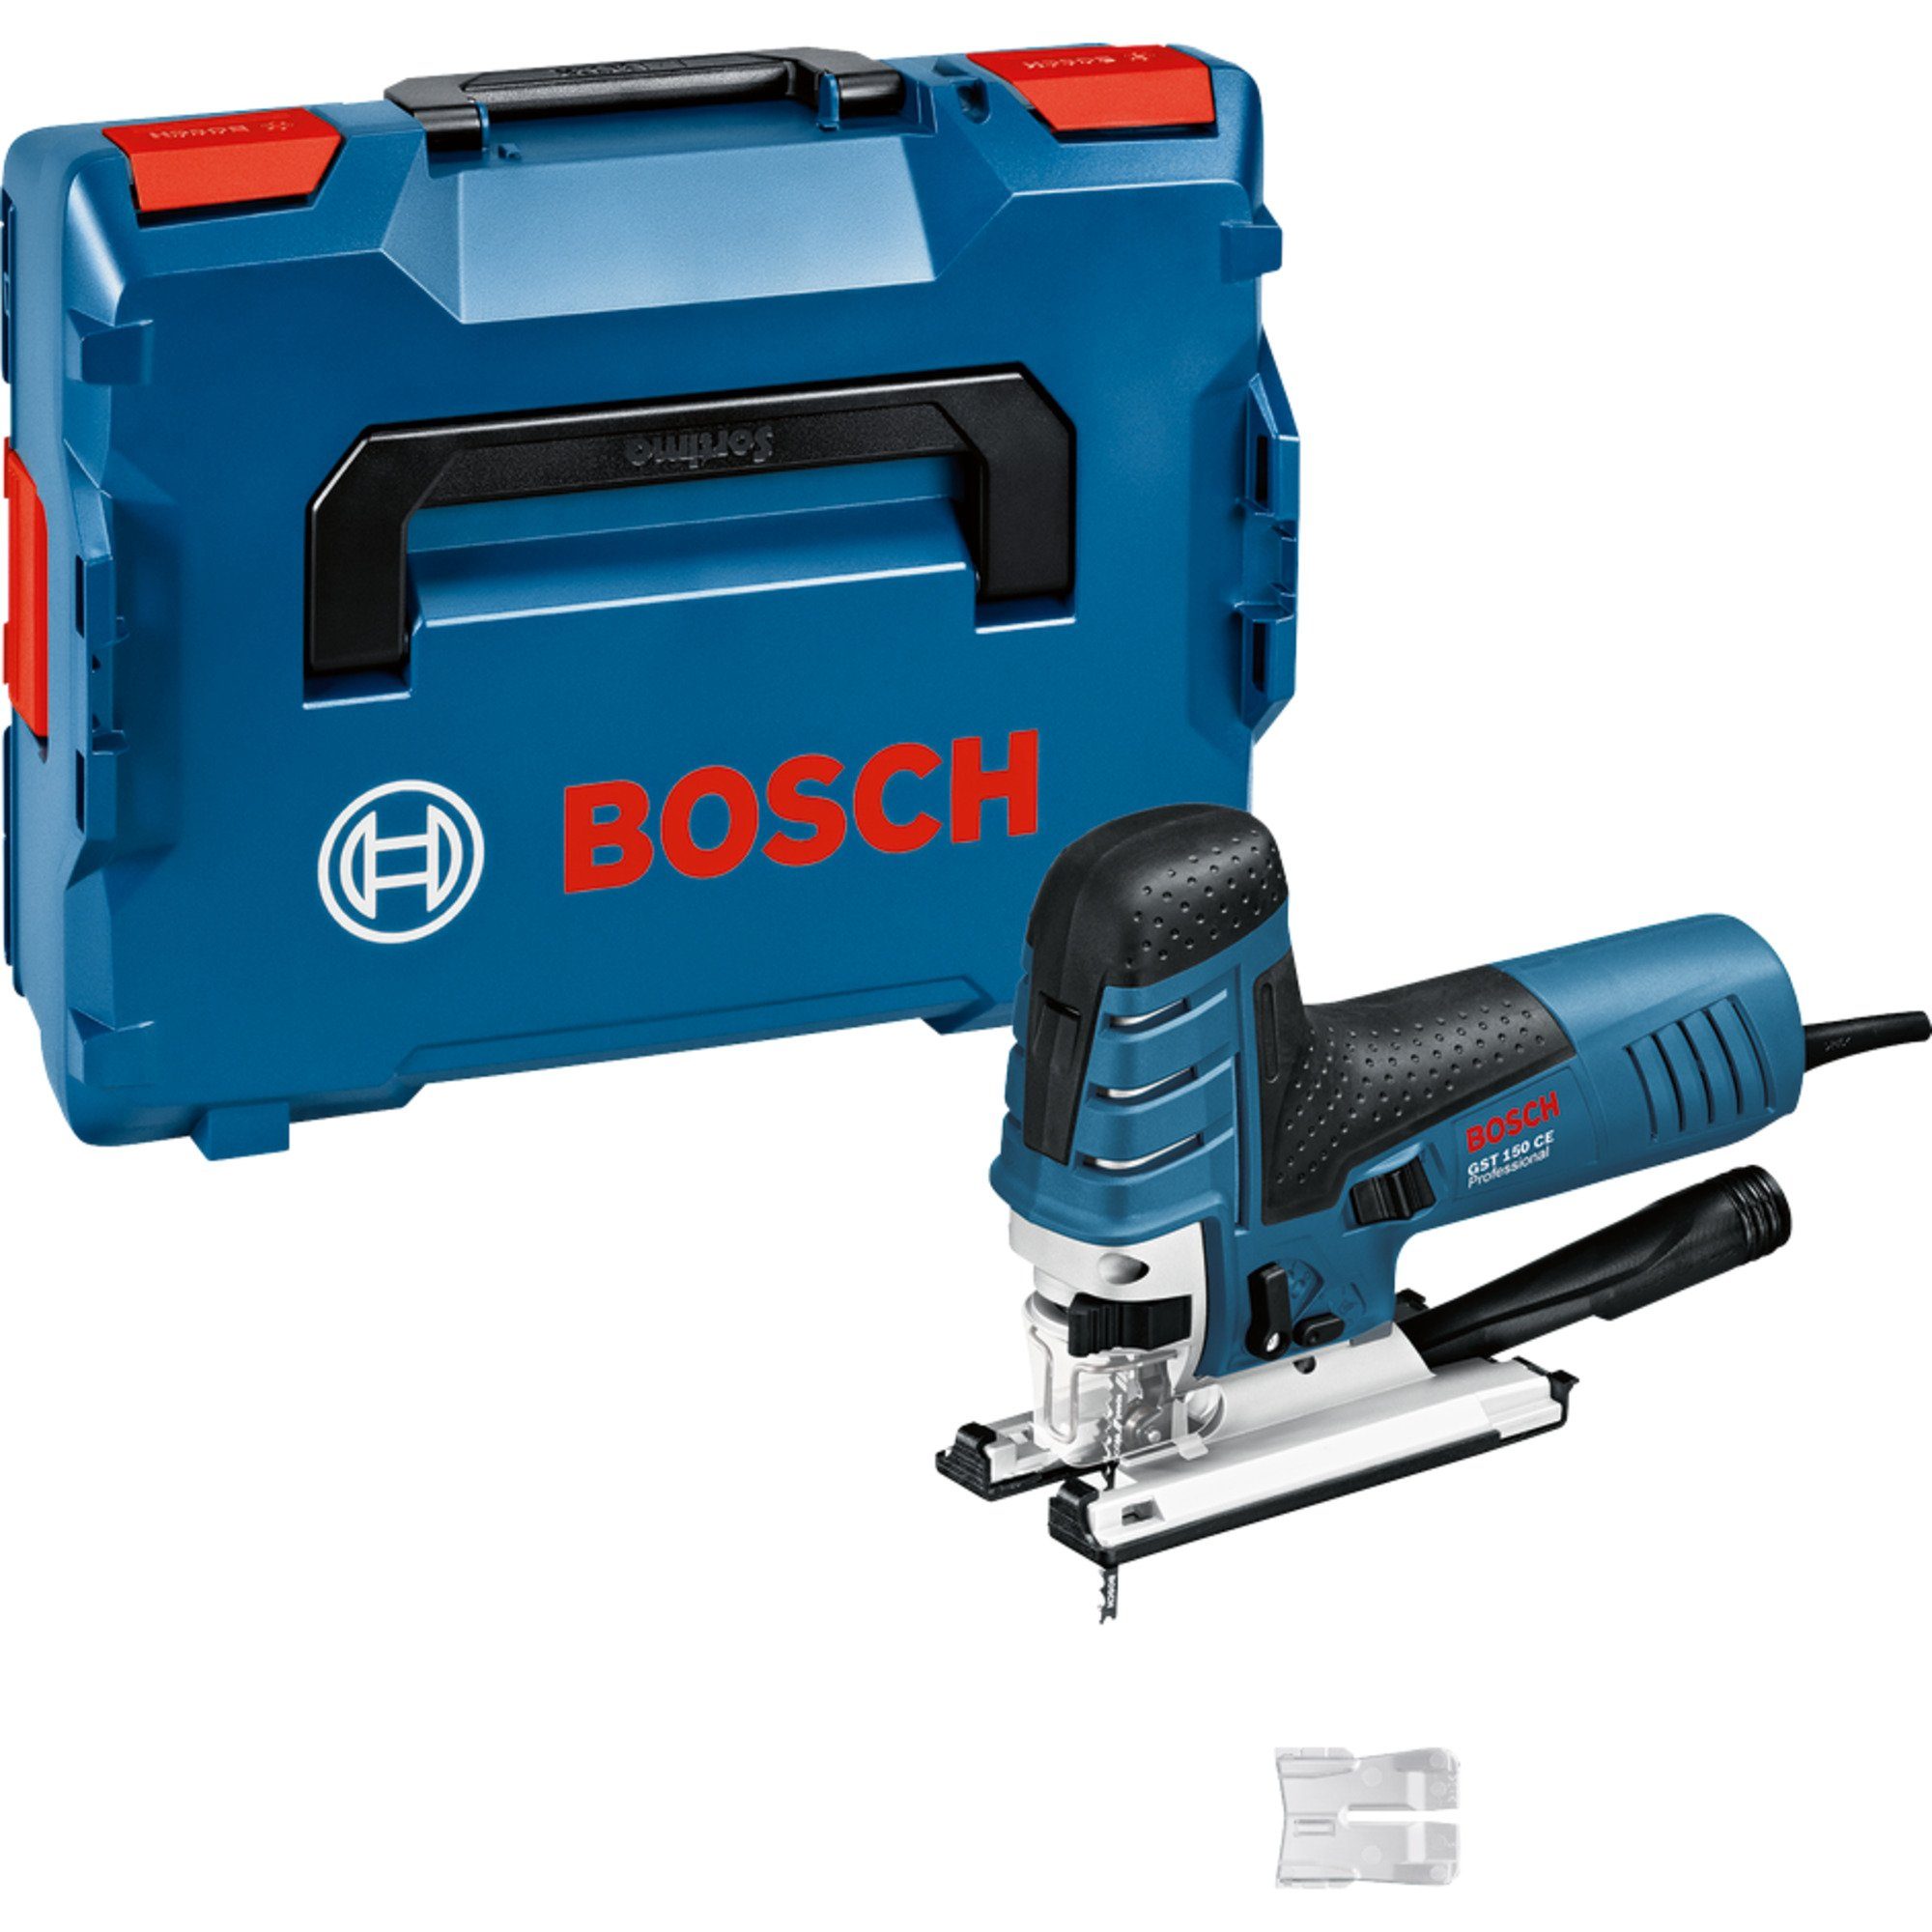 BOSCH Stichsäge Bosch Professional Stichsäge GST 150 CE